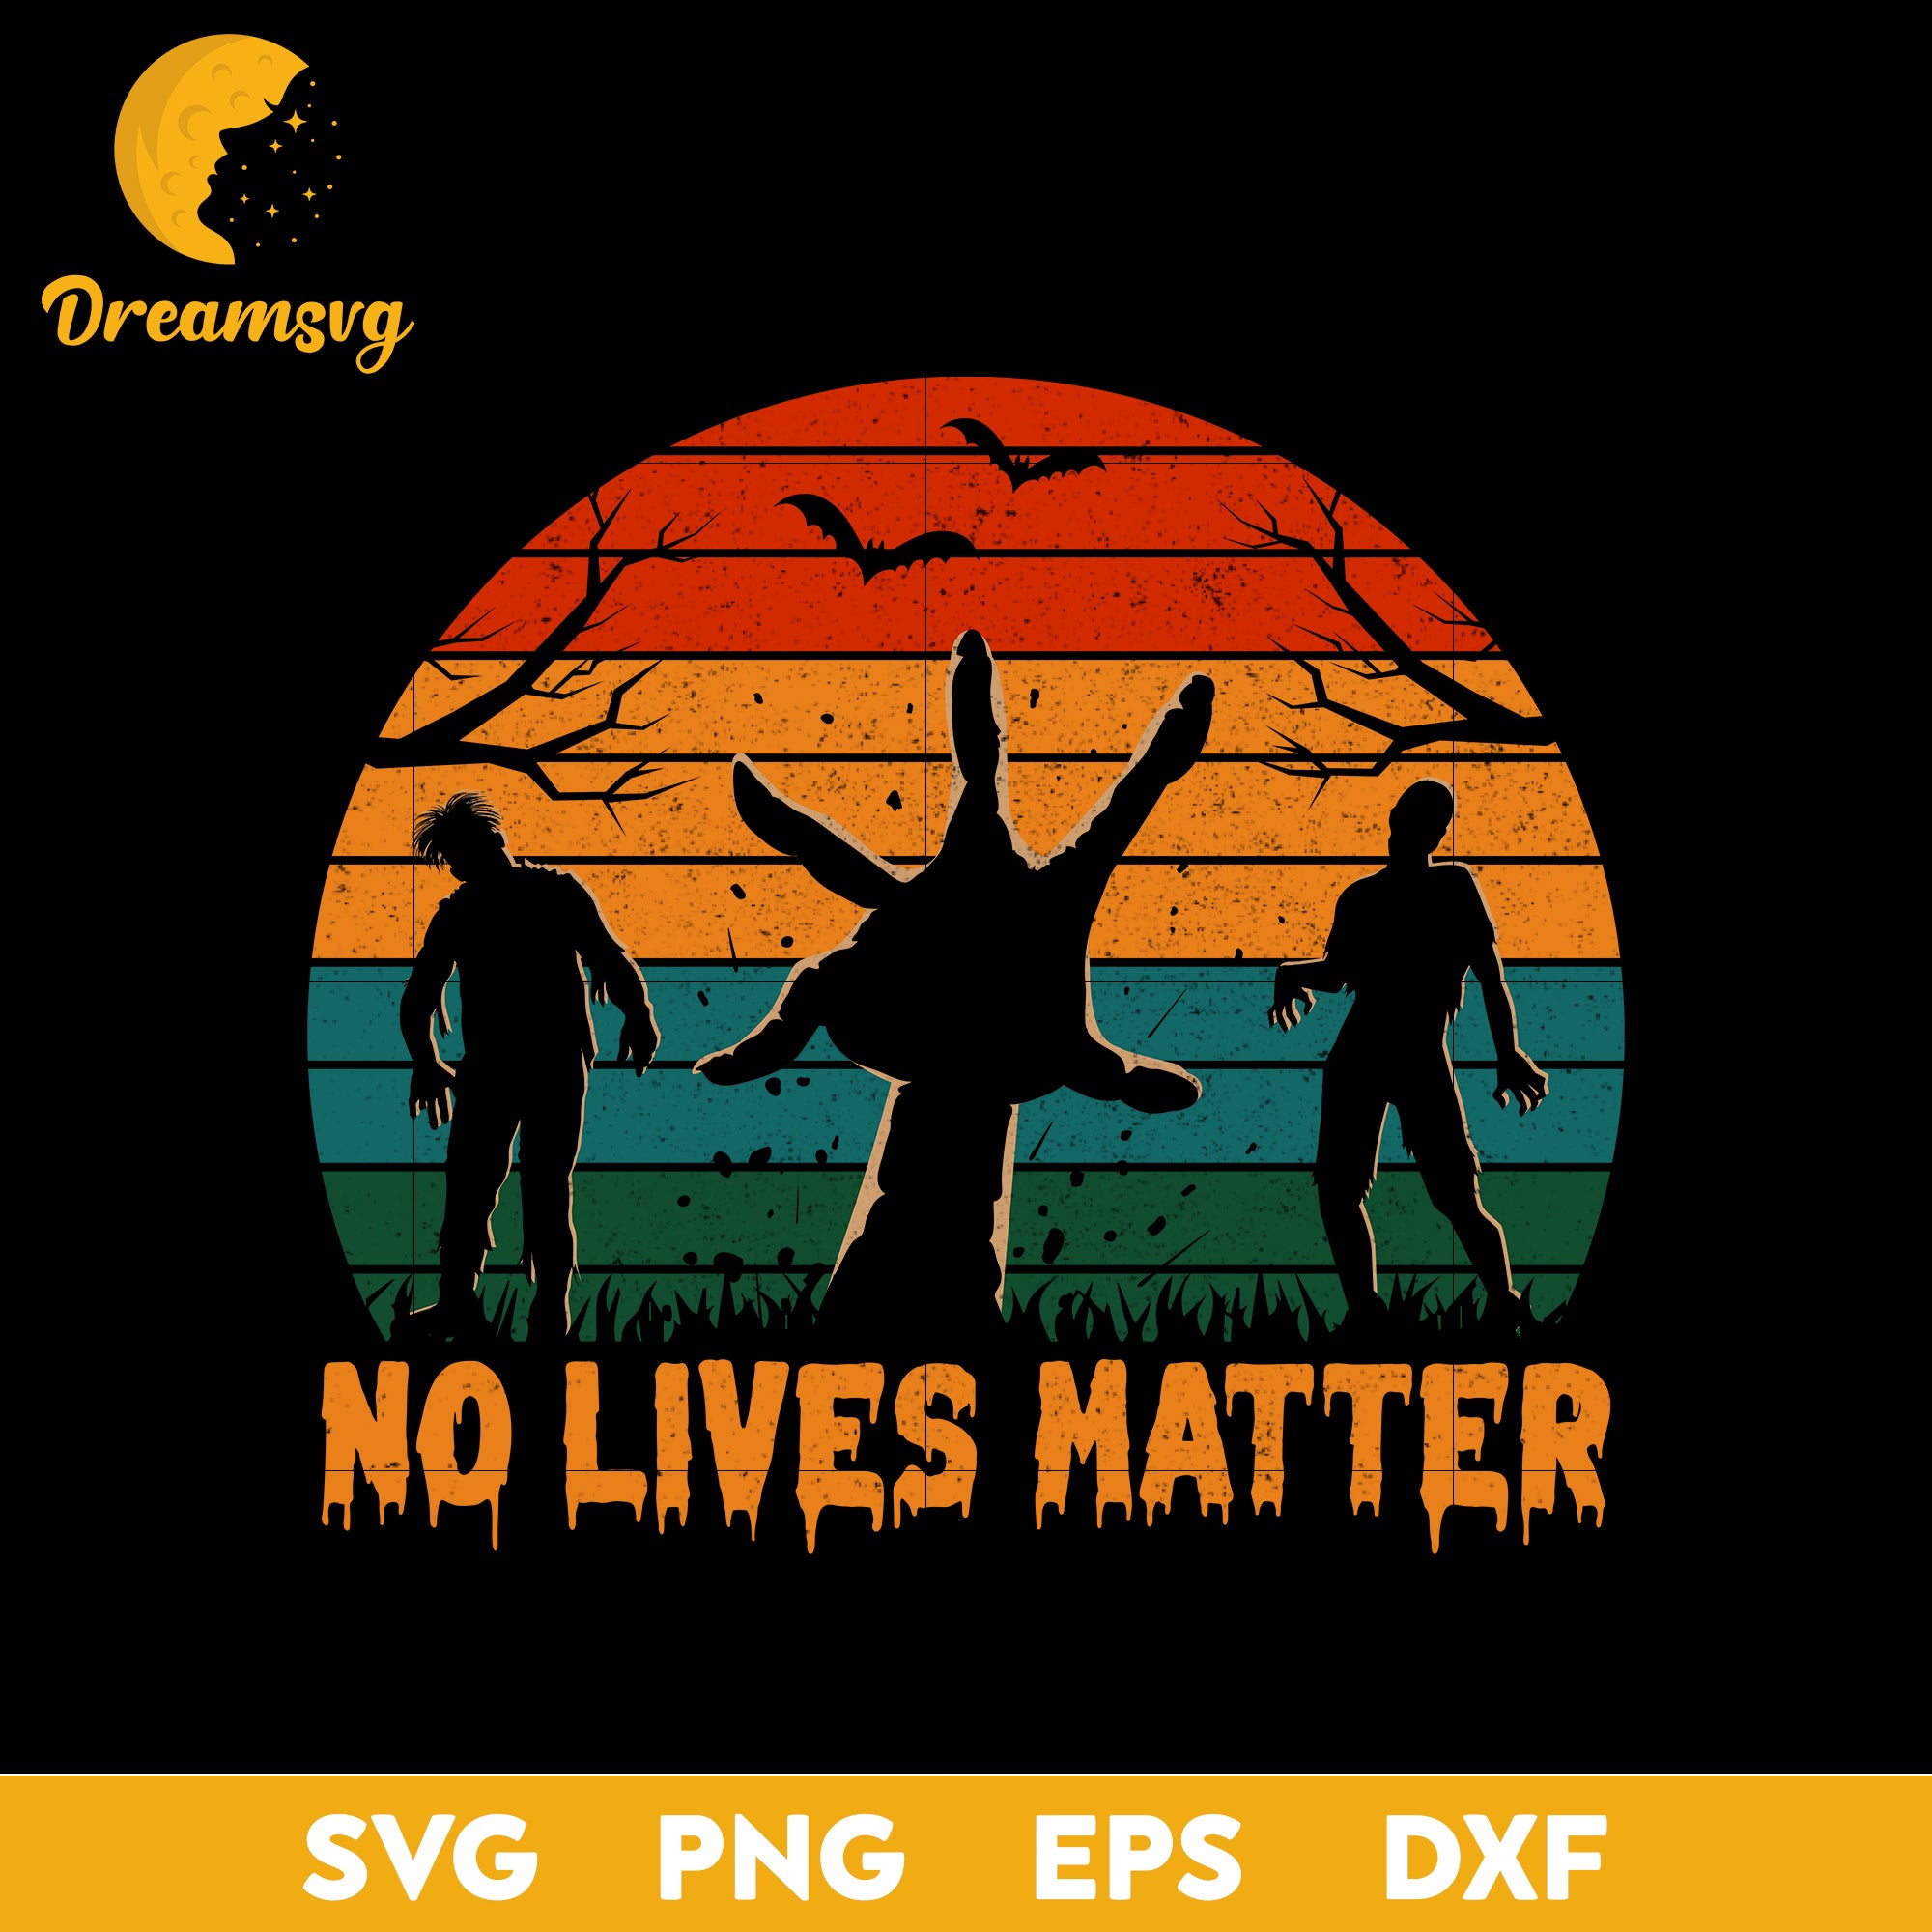 No lives matter svg, Halloween svg, png, dxf, eps digital file.